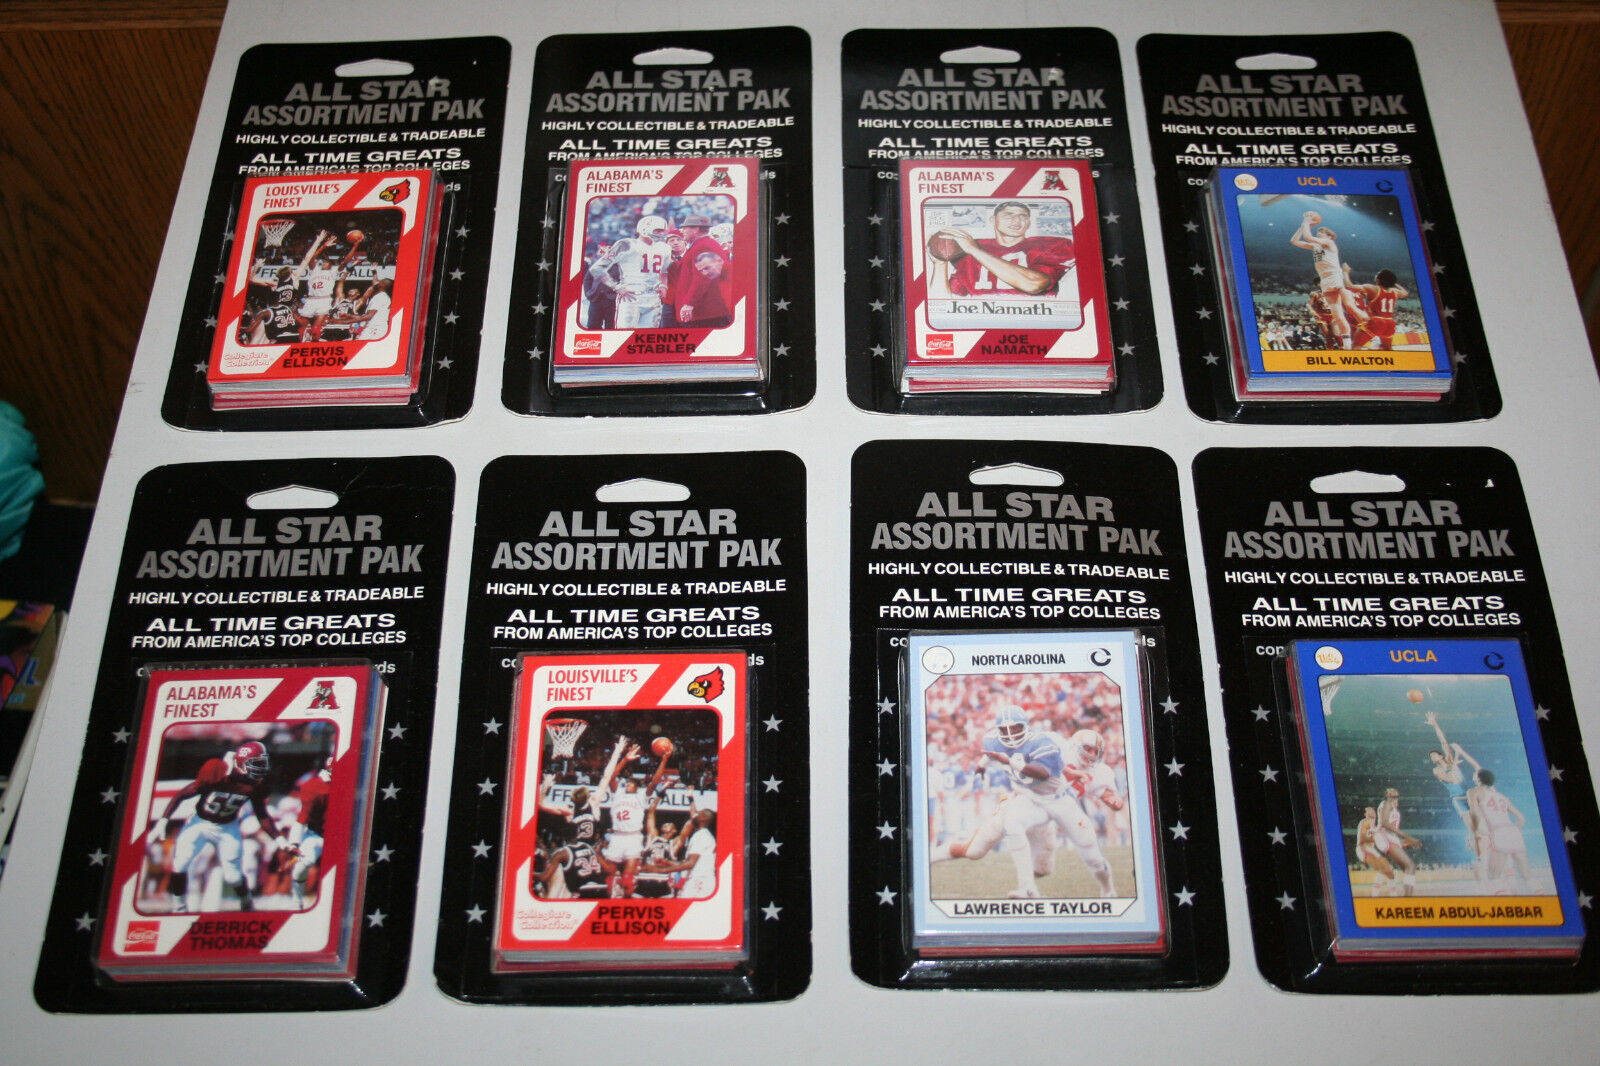 1989 All Star Assortment Paks - Collegiate Collection (8) COCA-COLA COLLEGE